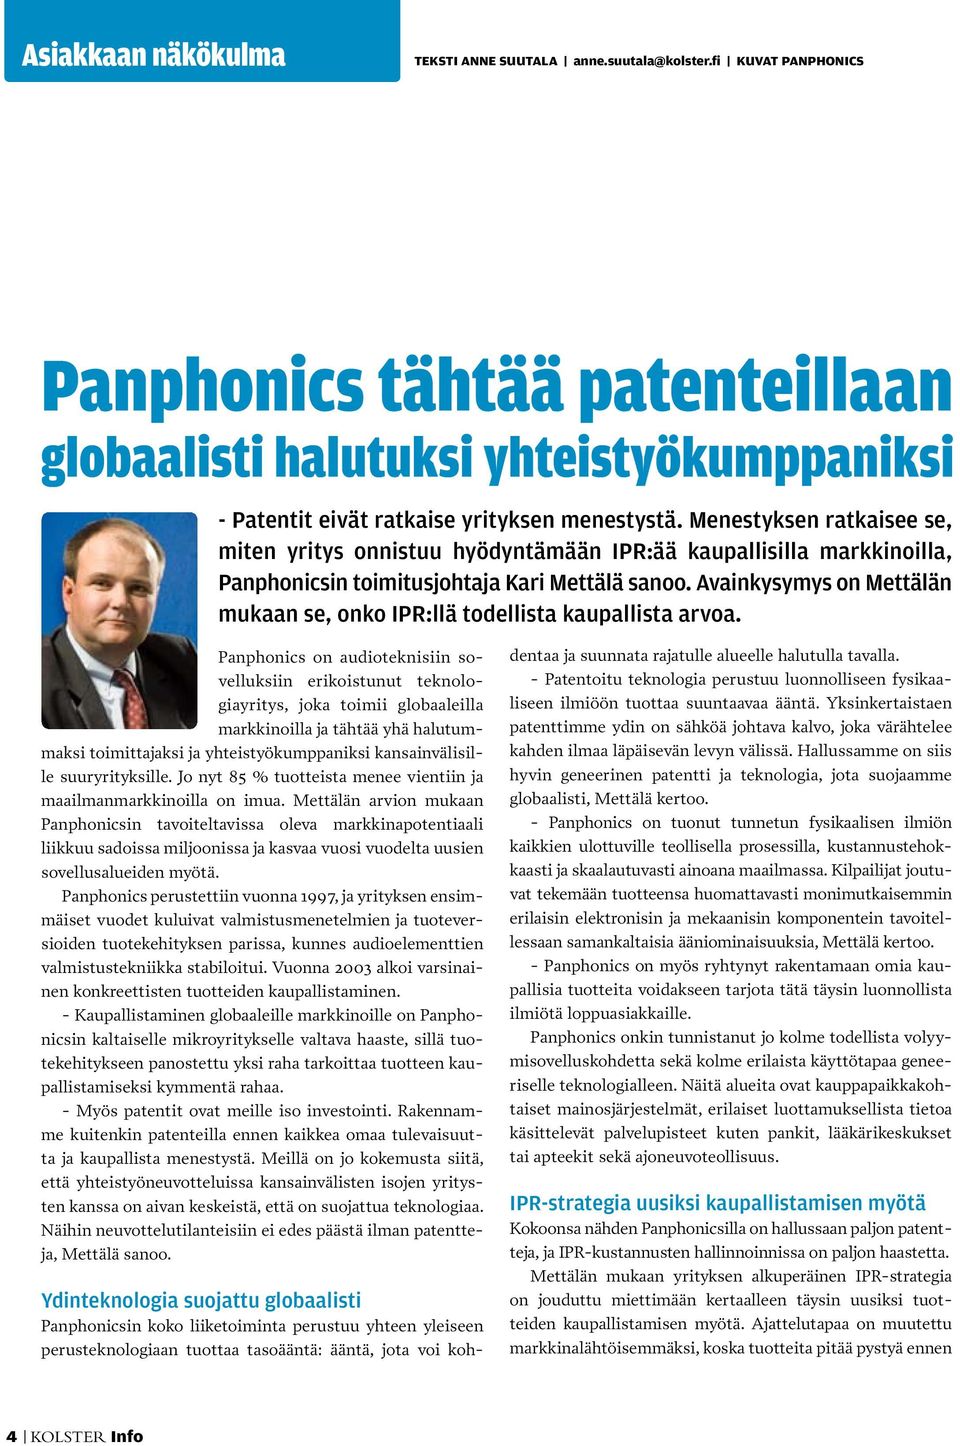 Menestyksen ratkaisee se, miten yritys onnistuu hyödyntämään IPR:ää kaupallisilla markkinoilla, Panphonicsin toimitusjohtaja Kari Mettälä sanoo.